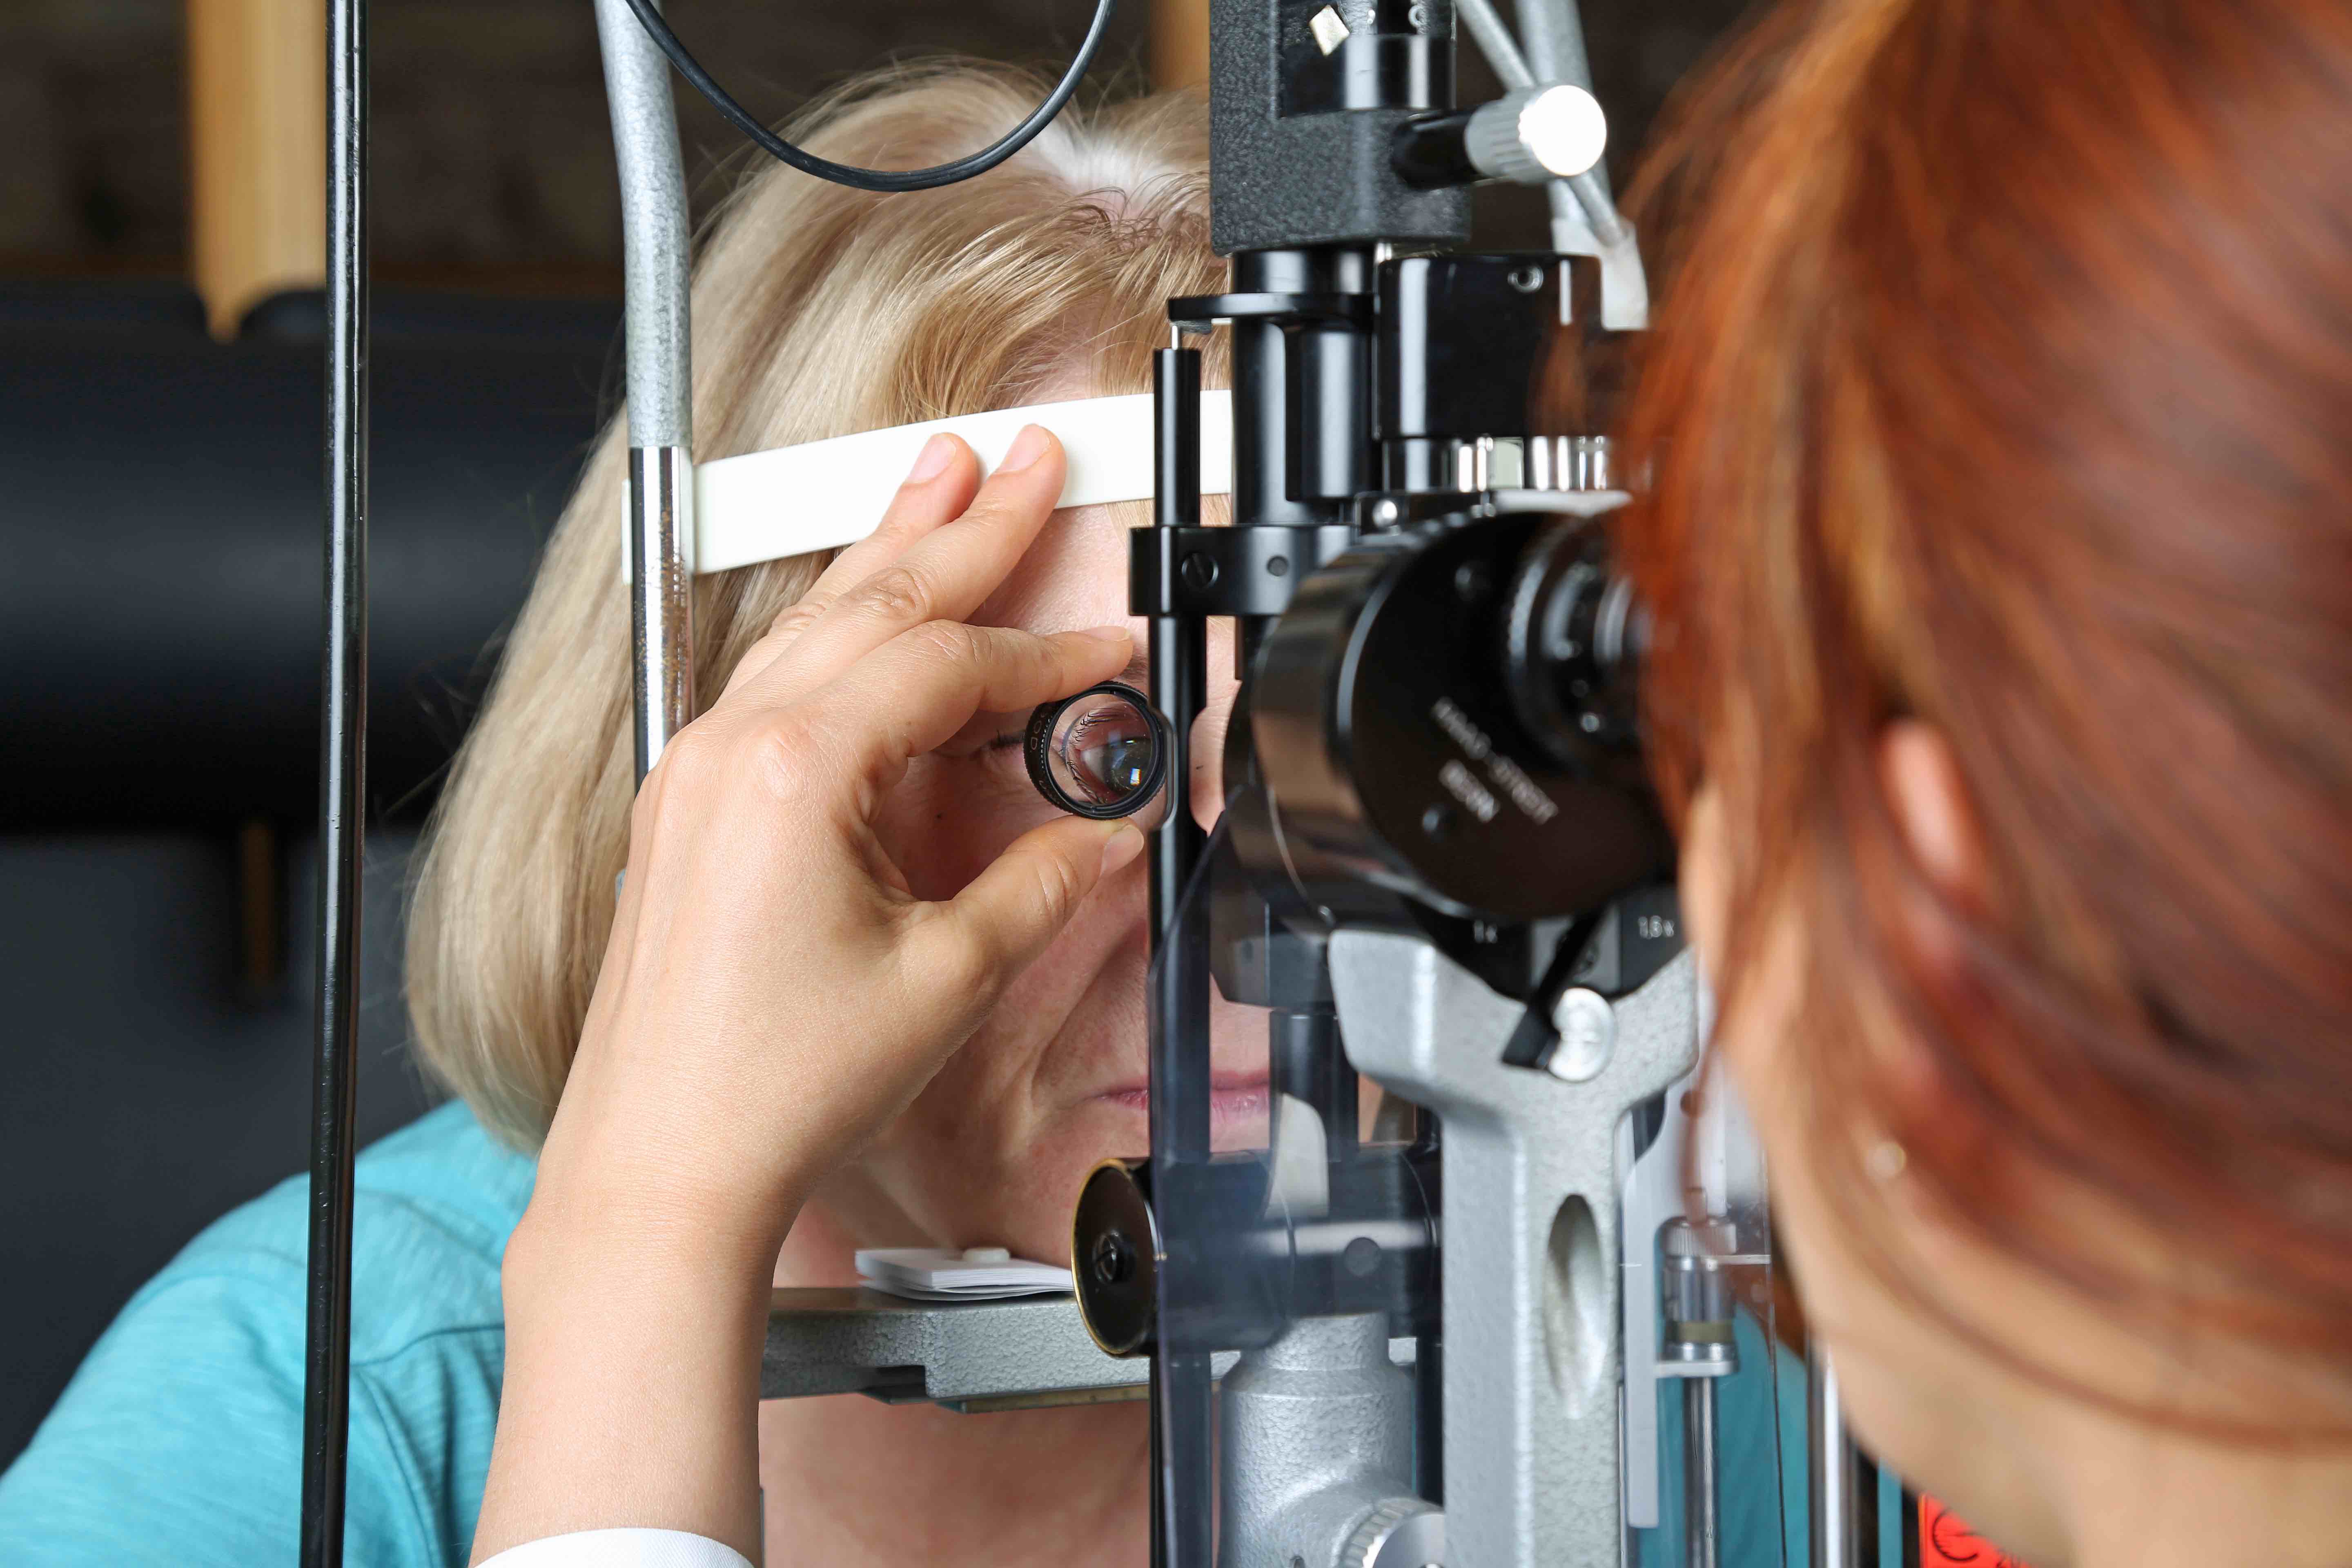 Un fond d'œil est un examen ophtalmologique qui permet de diagnostiquer et suivre une maladie oculaire. © Klaus Eppele, Adobe Stock